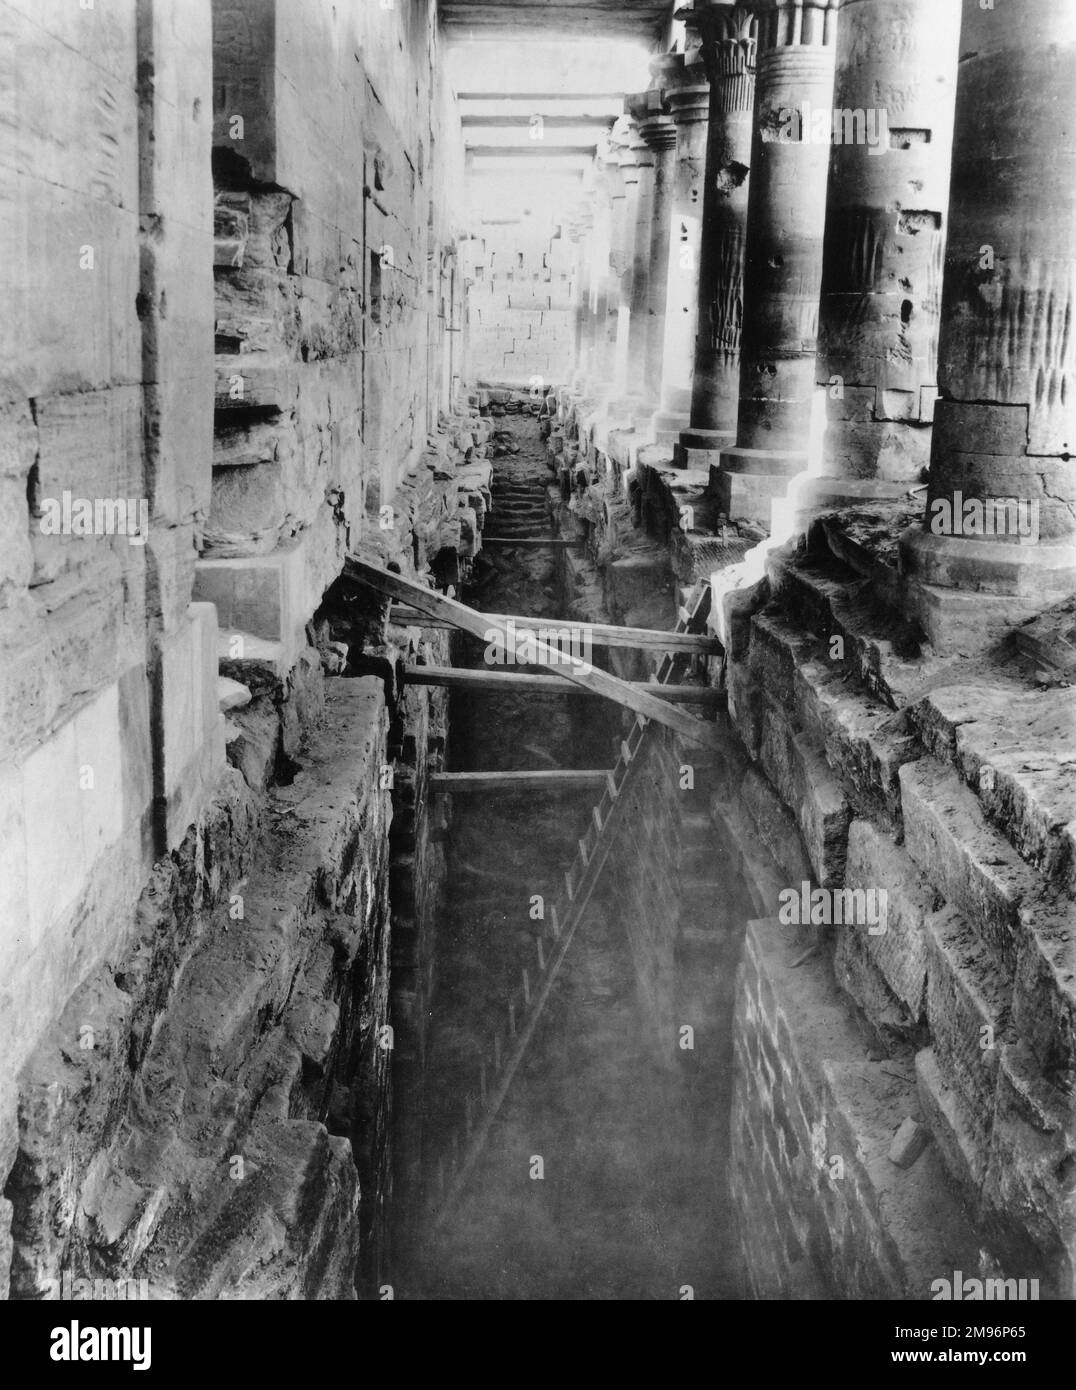 Die verfallenen Mauern und Säulen des Tempels von Philea, Teil eines alten ägyptischen Tempelkomplexes auf der Insel Philea. Stockfoto